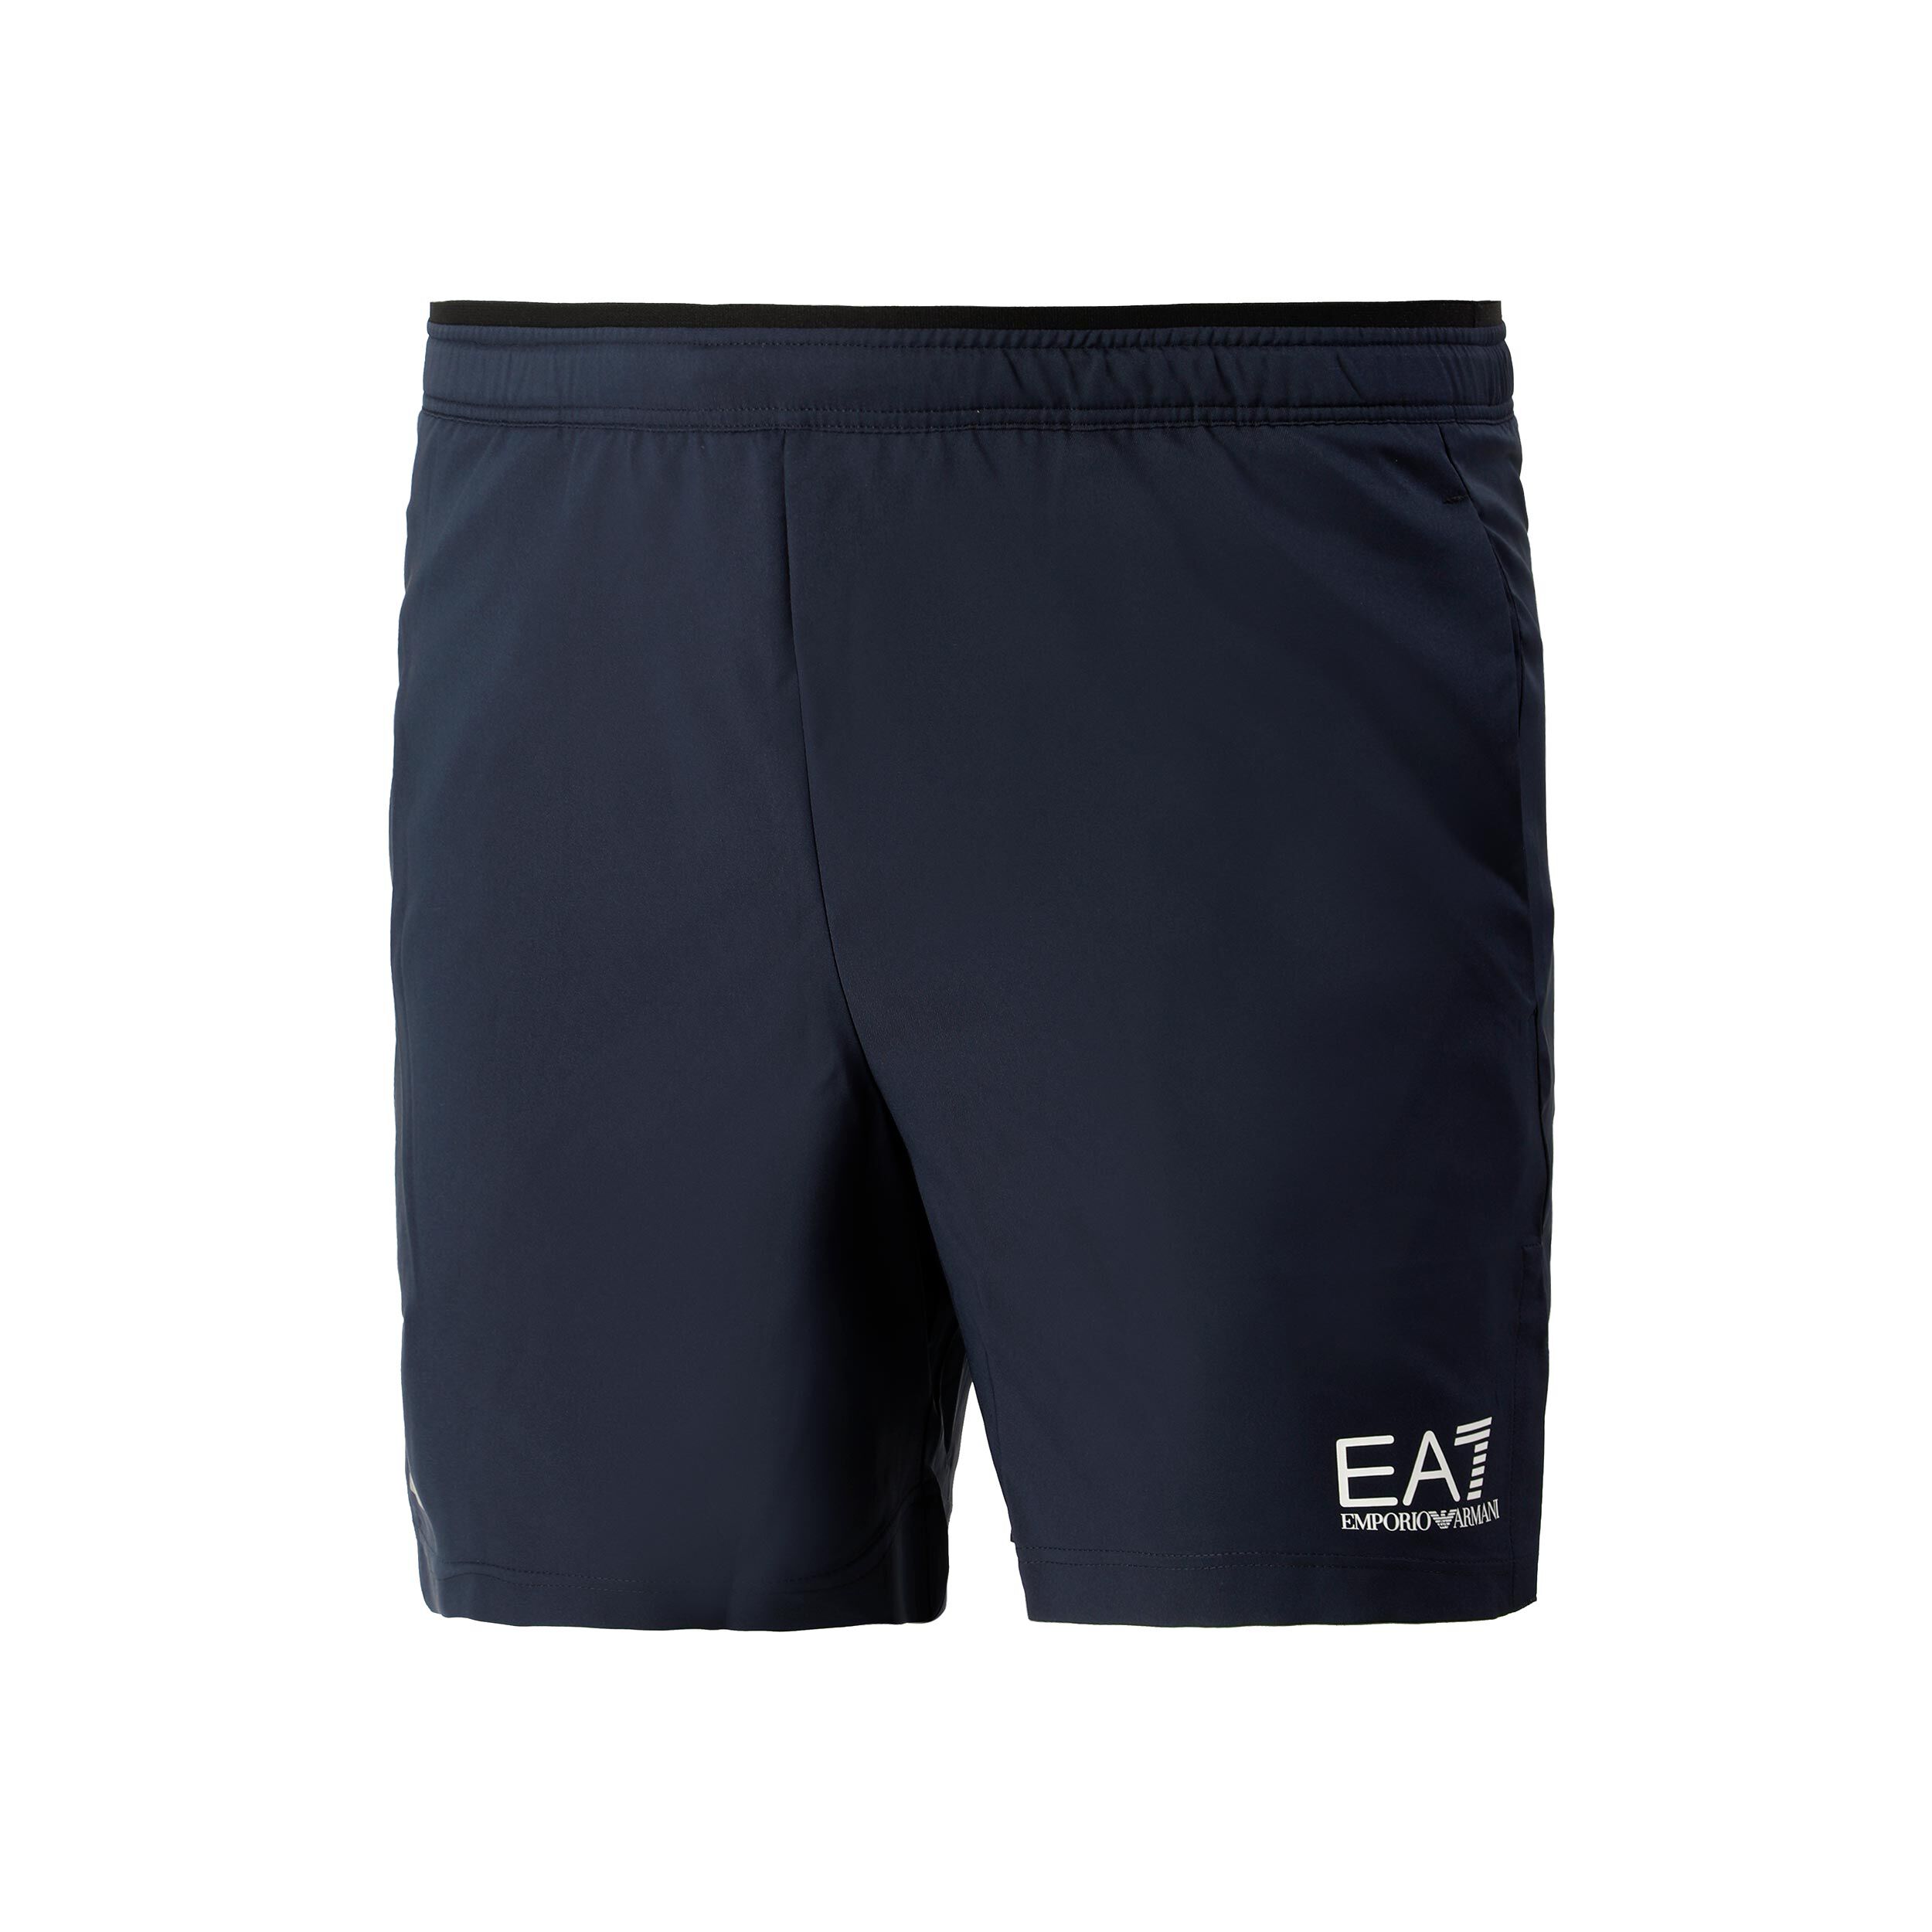 ea7 tennis apparel